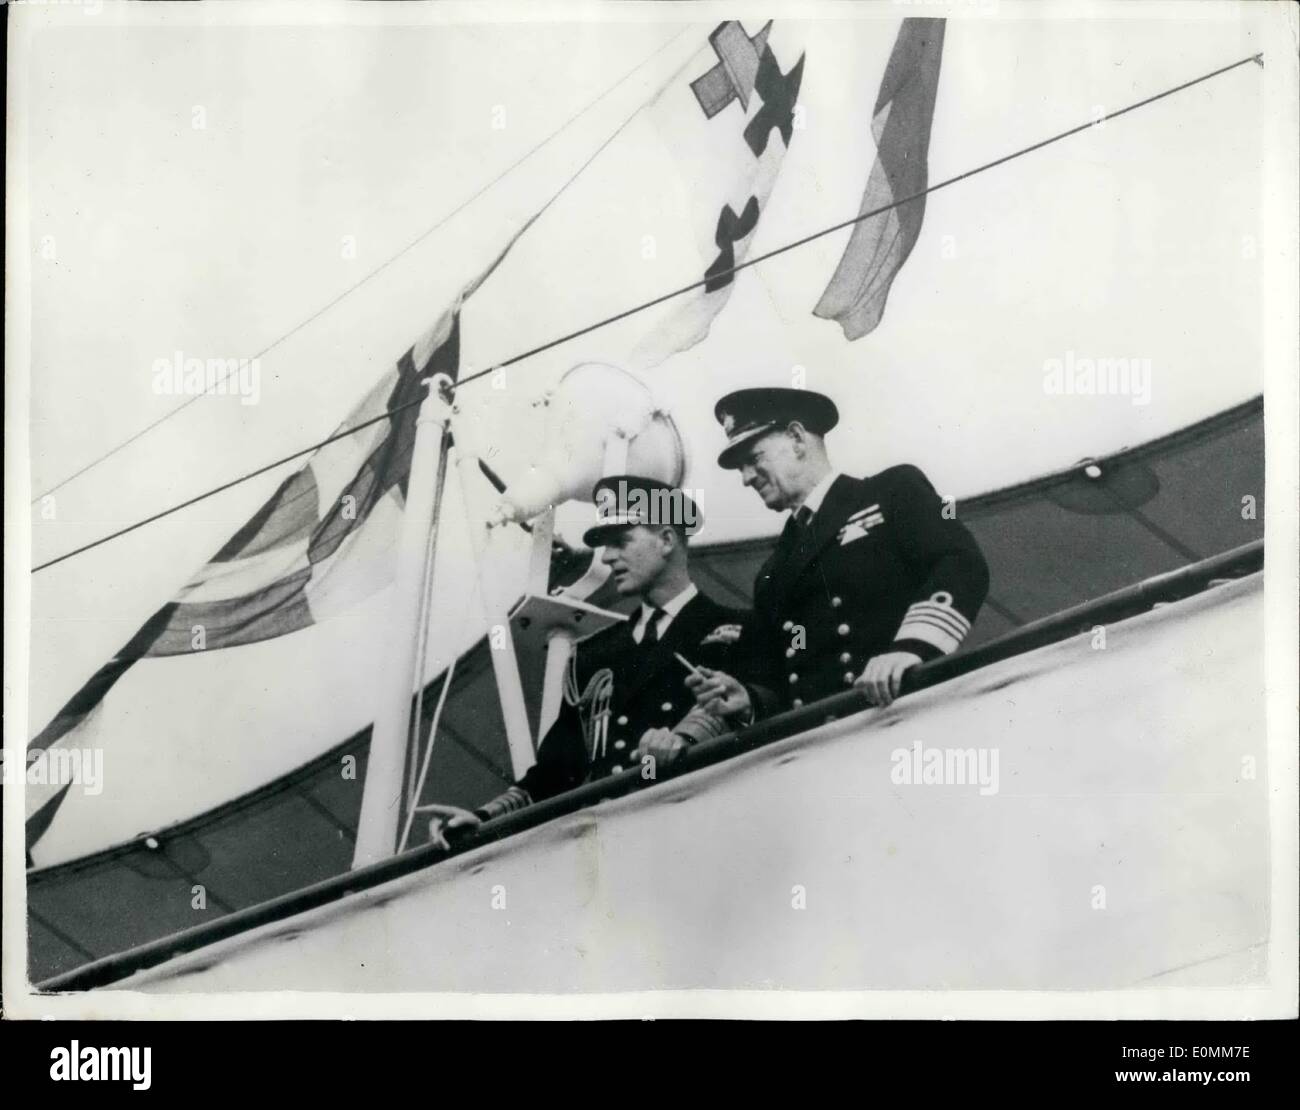 15. Oktober 1955 - Herzog von Edinburgh eskortieren König Friedrich über die königliche Yacht - Britannia. König Frederick von Dänemark war zum Mittagessen an Bord der Royal Yacht Britannia - von der Duke of Edinburgh bei dessen Besuch nach Kopenhagen im Zusammenhang mit der britischen Fachausstellung unterhalten. Der Herzog begleitet den König auf eine Tour durch das Schiff. Sie sind hier auf der Brücke gesehen. Stockfoto